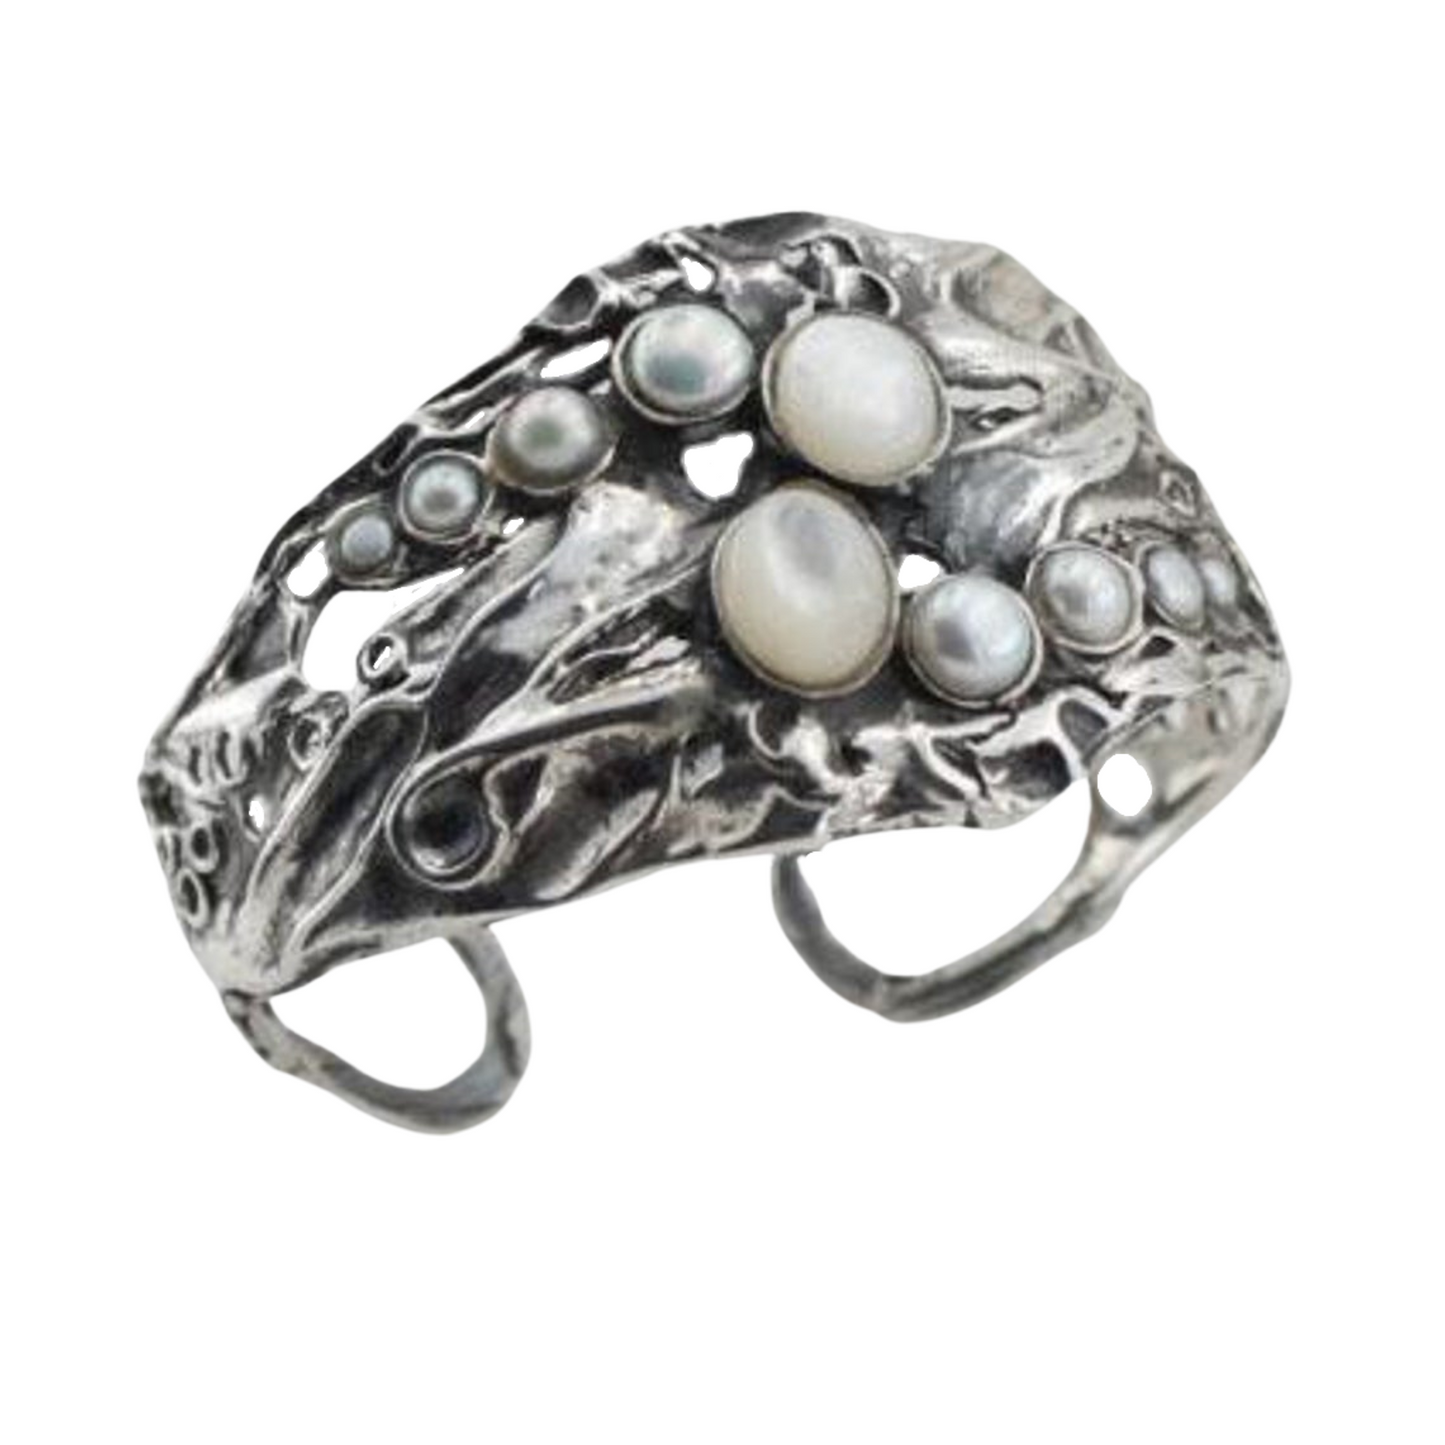 Opalit and Pearls Cuff Bracelet, Sterling Silver Bracelet with Opalit and pearls, statement jewelry, artistic fine jewelry bracelet